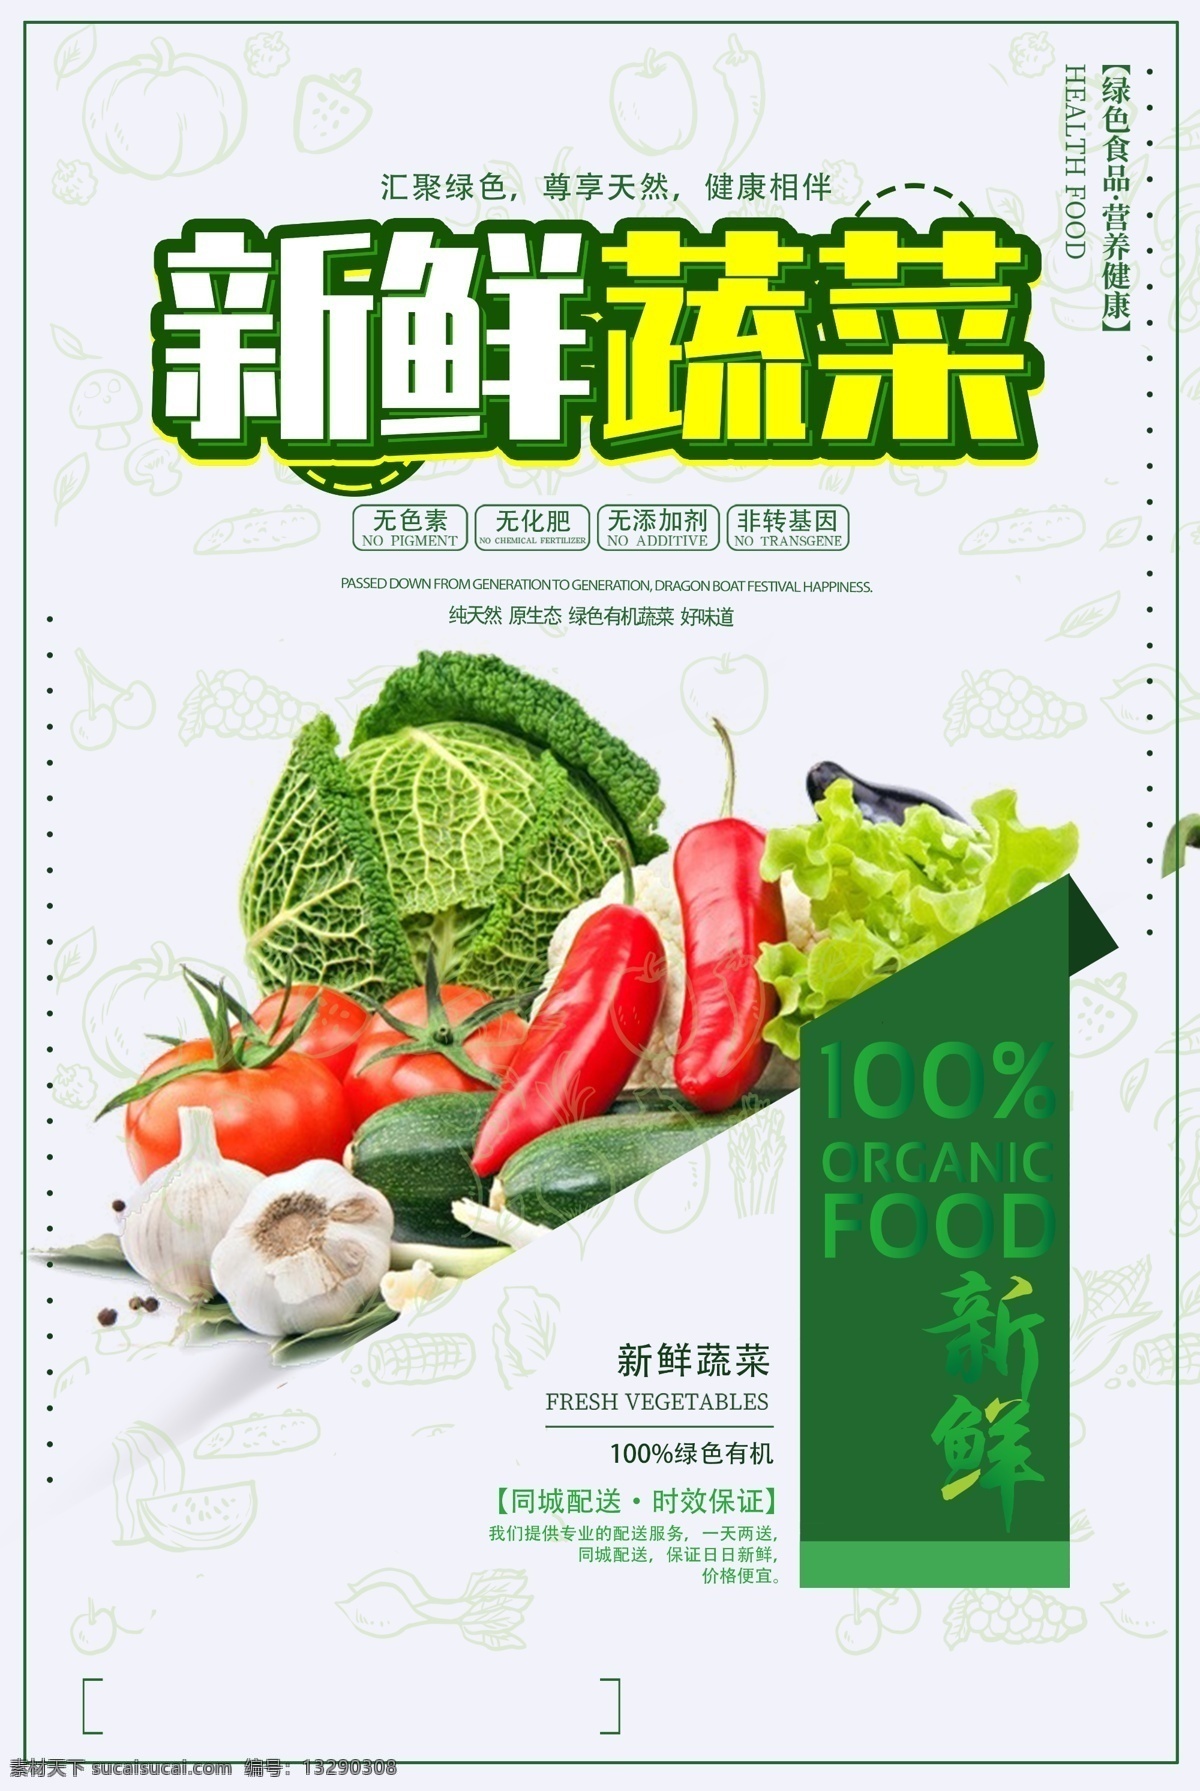 蔬菜展板 蔬菜展架 蔬菜海报 新鲜蔬菜 有机蔬菜 蔬菜广告 蔬菜店海报 蔬菜店 果蔬店 蔬菜创意 蔬菜店展